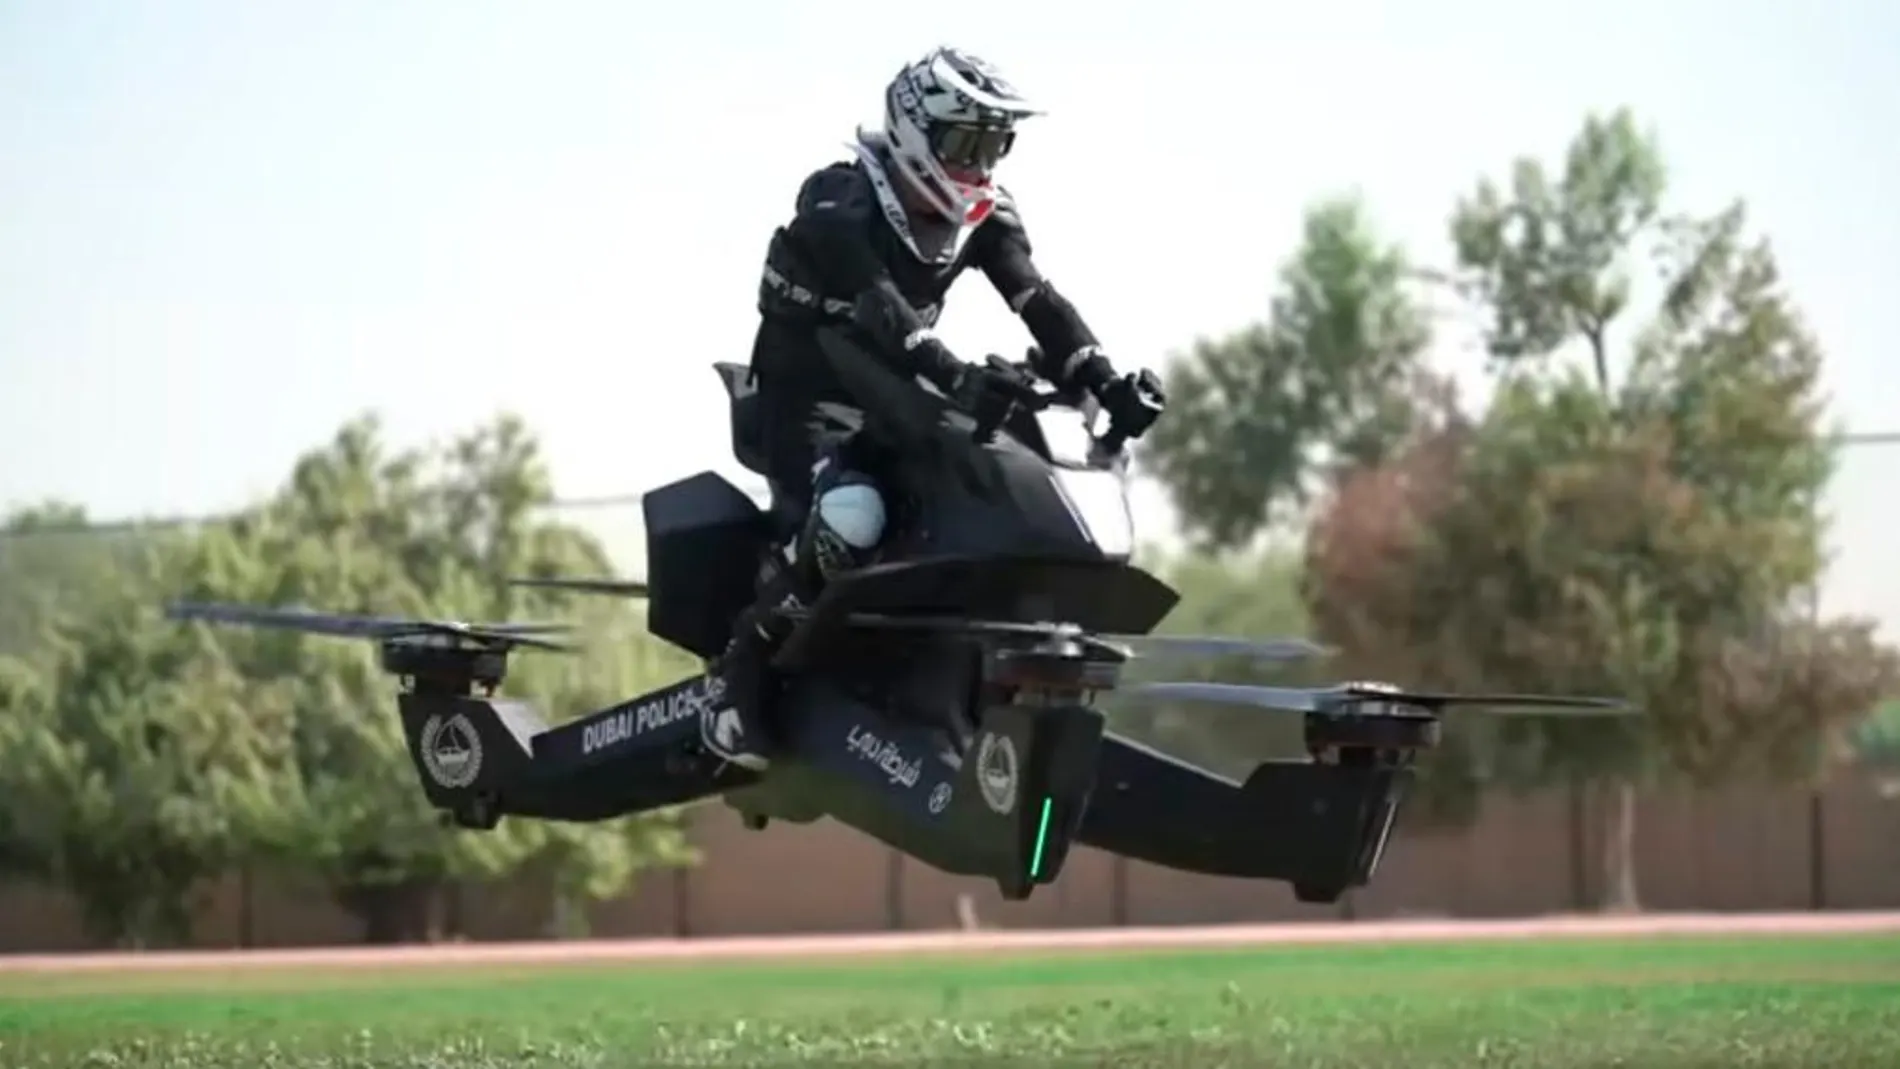 La moto voladora o 'hoverbike' es el modelo S3 2019 que fabrica la empresa estadounidense Hoversurf / YouTube